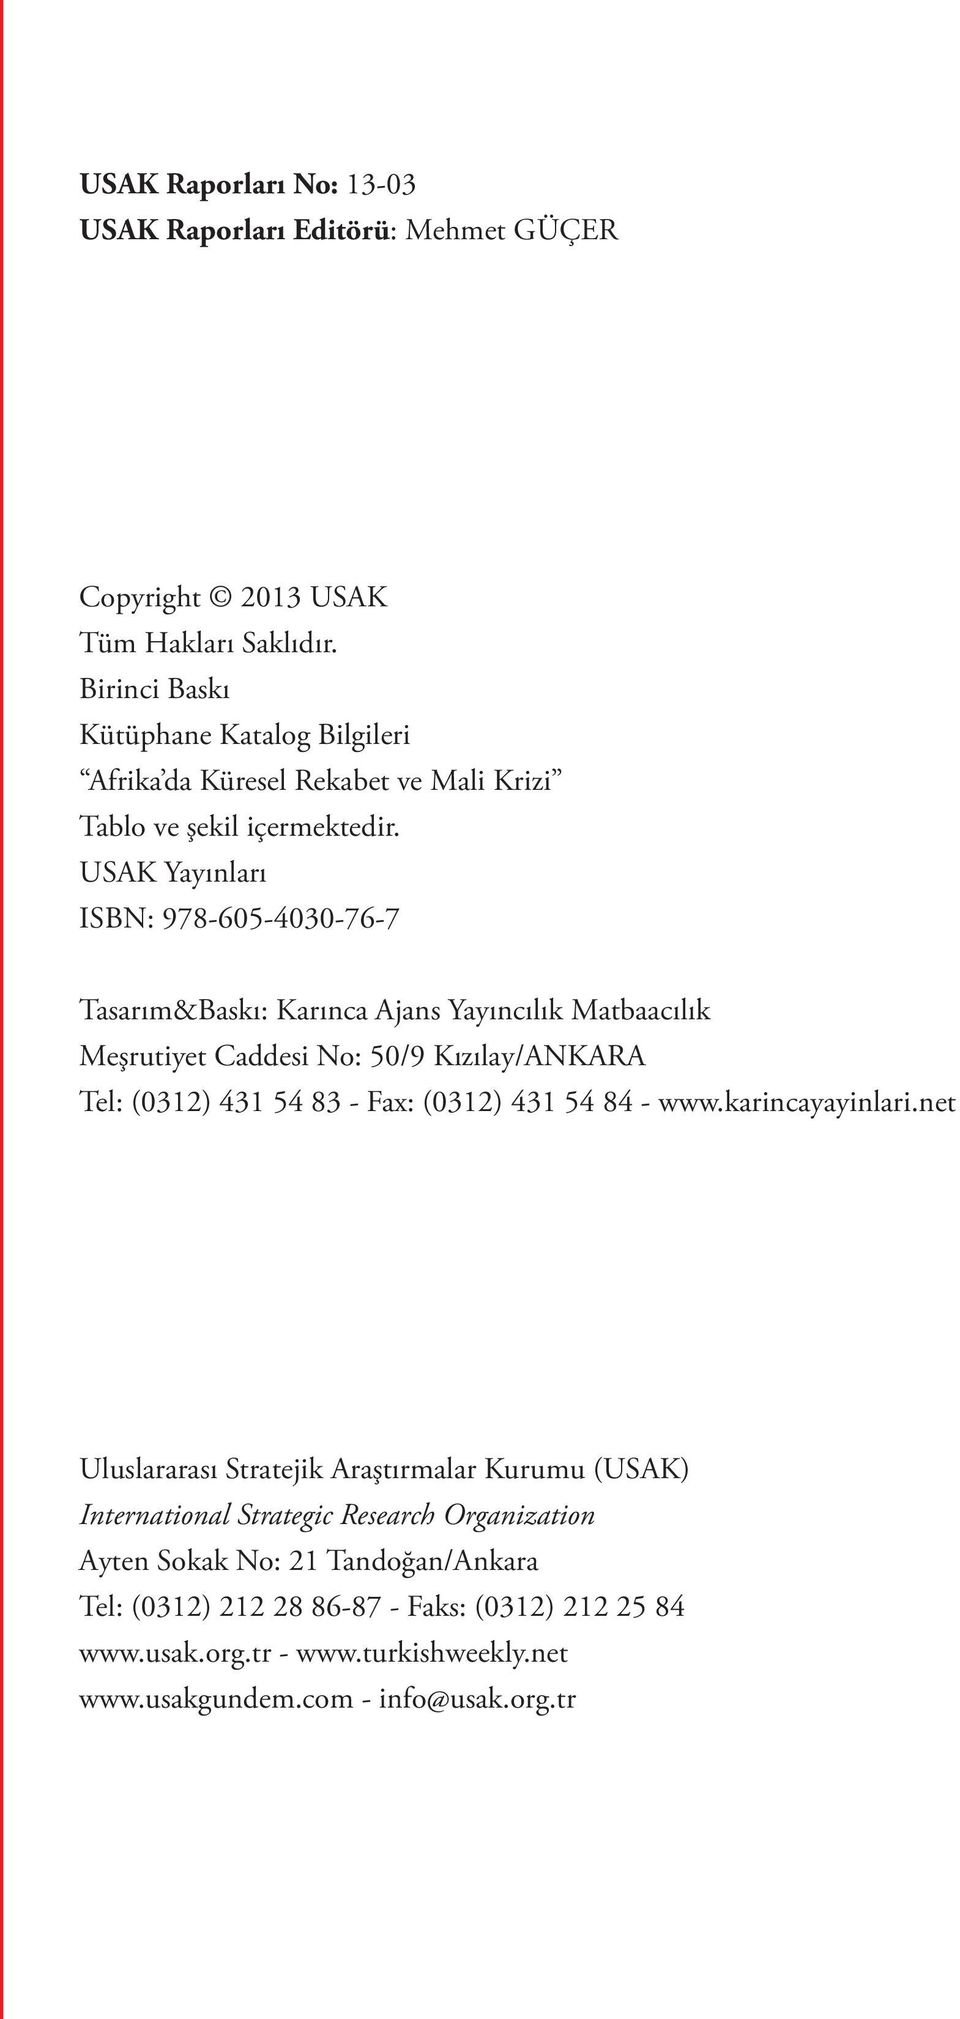 USAK Yayınları ISBN: 978-605-4030-76-7 Tasarım&Baskı: Karınca Ajans Yayıncılık Matbaacılık Meşrutiyet Caddesi No: 50/9 Kızılay/ANKARA Tel: (0312) 431 54 83 - Fax: (0312)